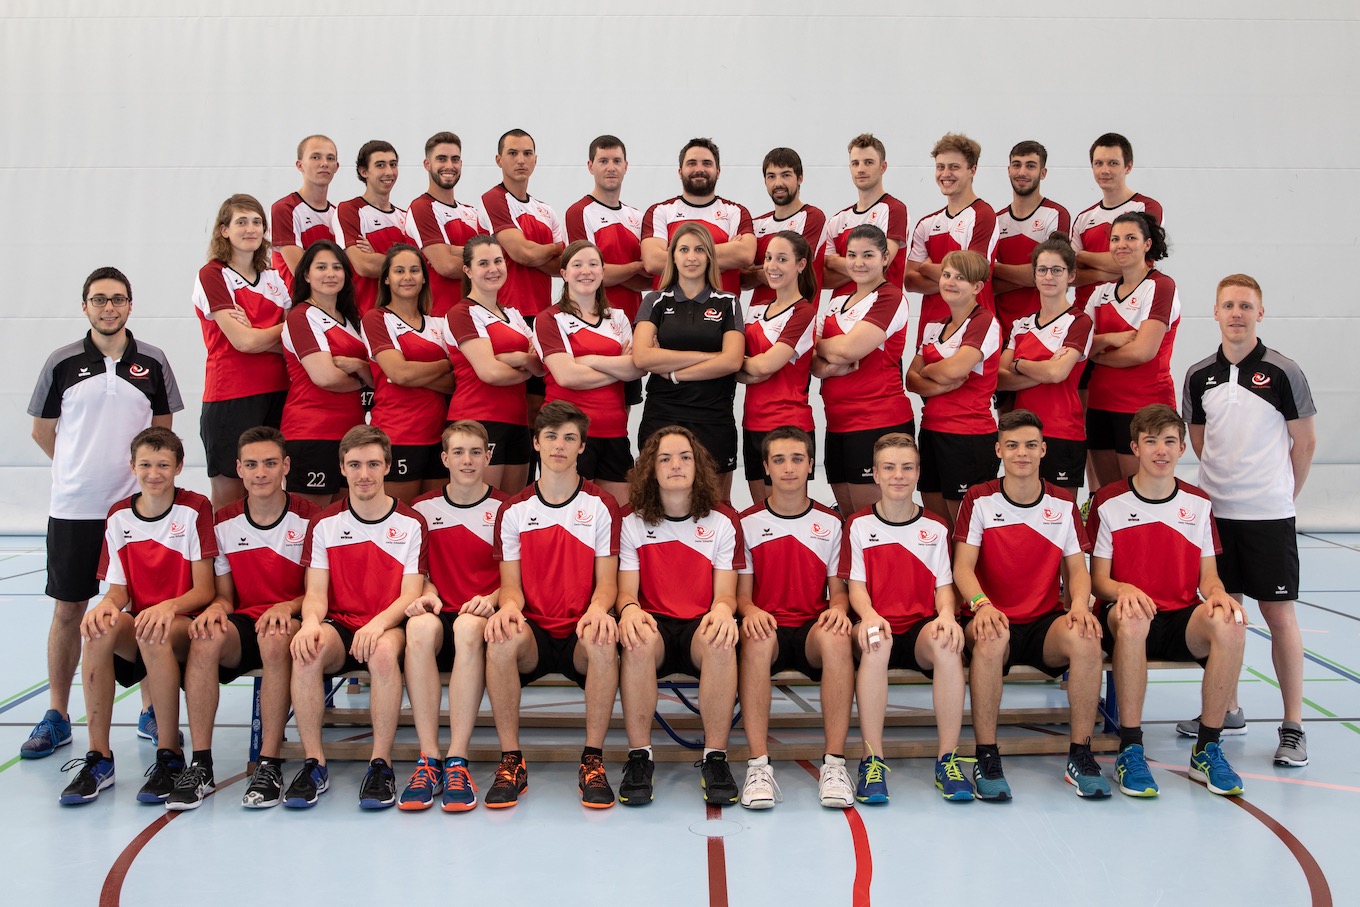 La délégation suisse pour les championnats du monde de tchoukball 2019